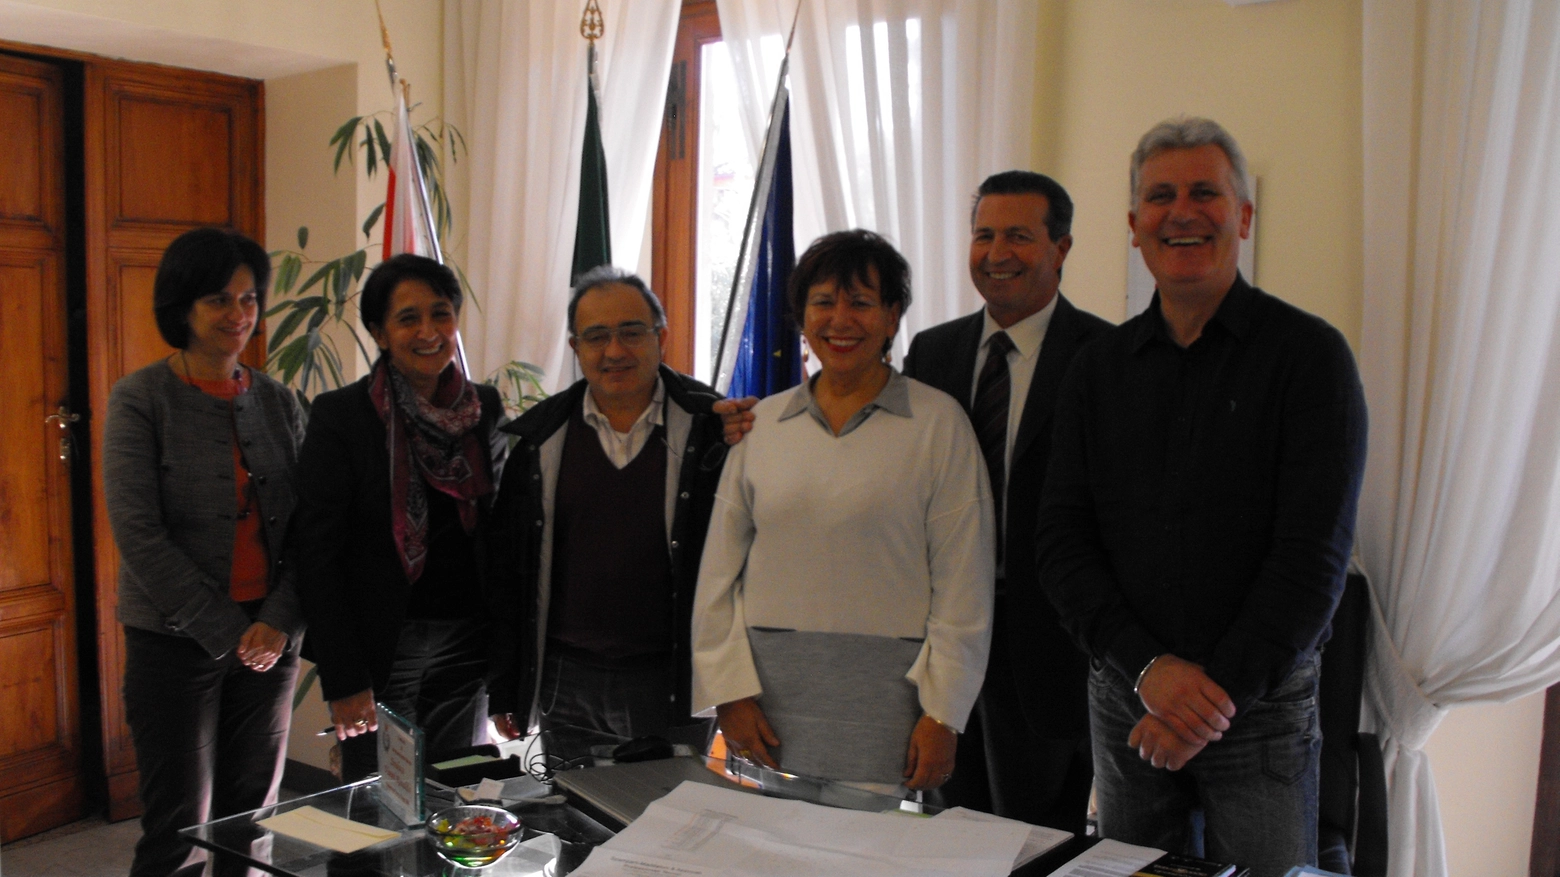 I patron Conad Giovanna Pazzini e Silvano Ferrini con il sindaco Vanni per Cintolese Nova